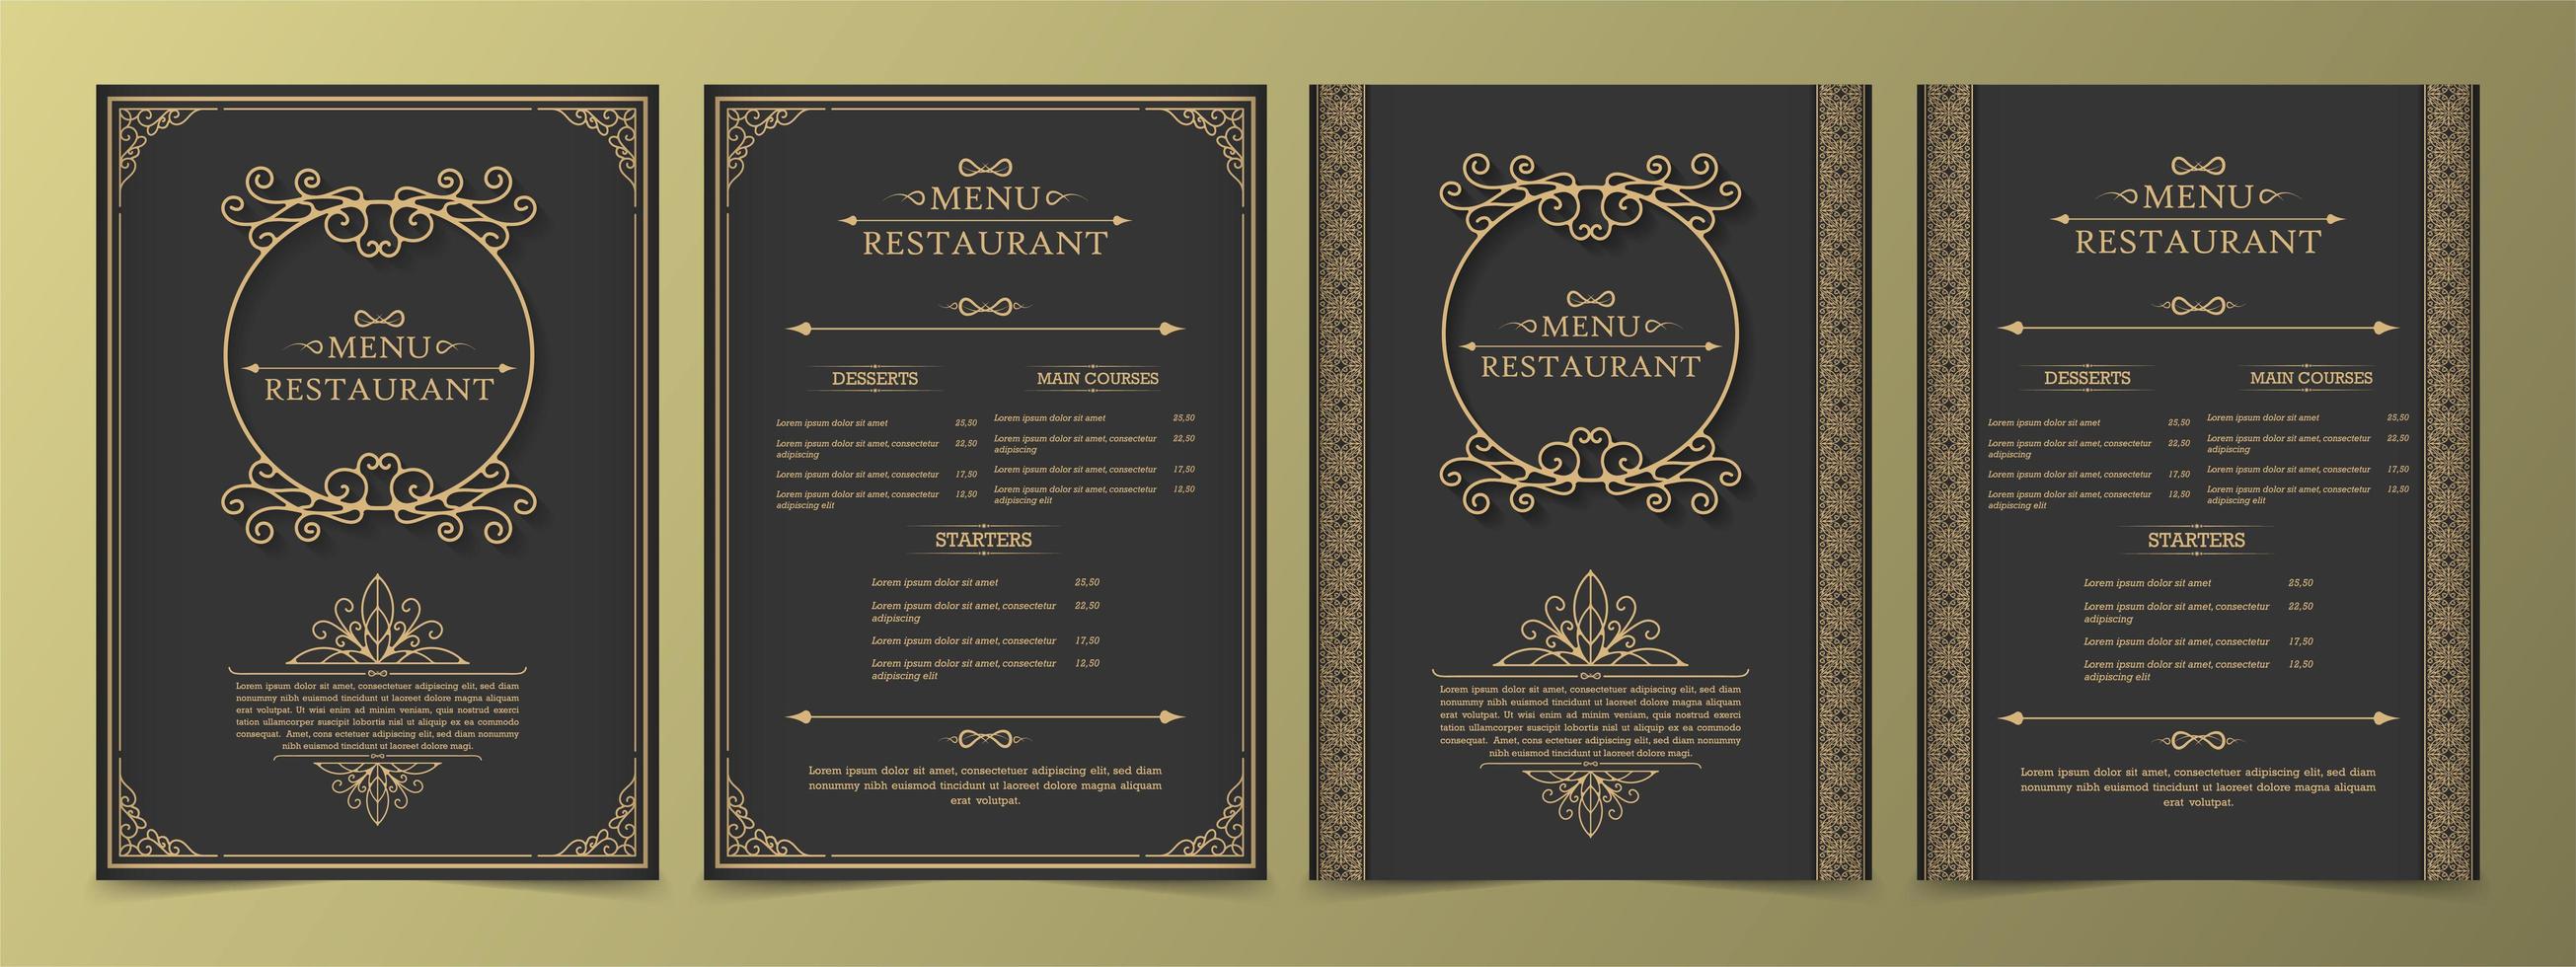 menu definido com elementos decorativos e molduras vetor